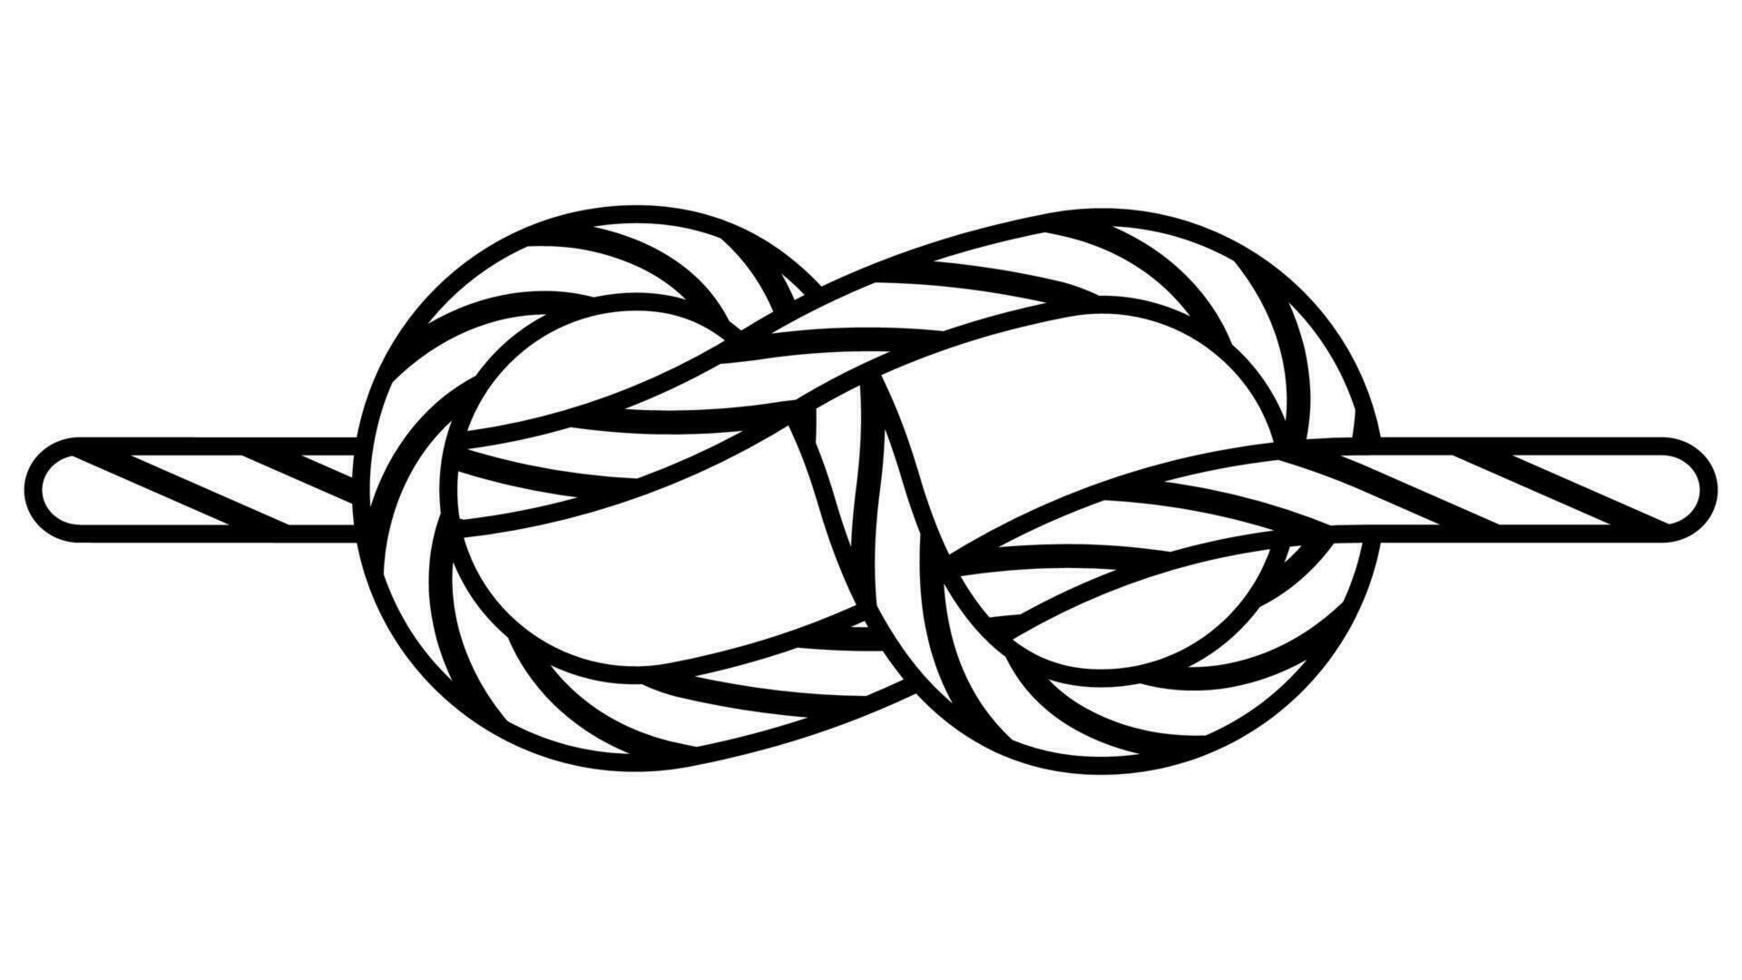 slips hav Knut fastsättning kabel- rep, ikon sticka hav Knut vektor